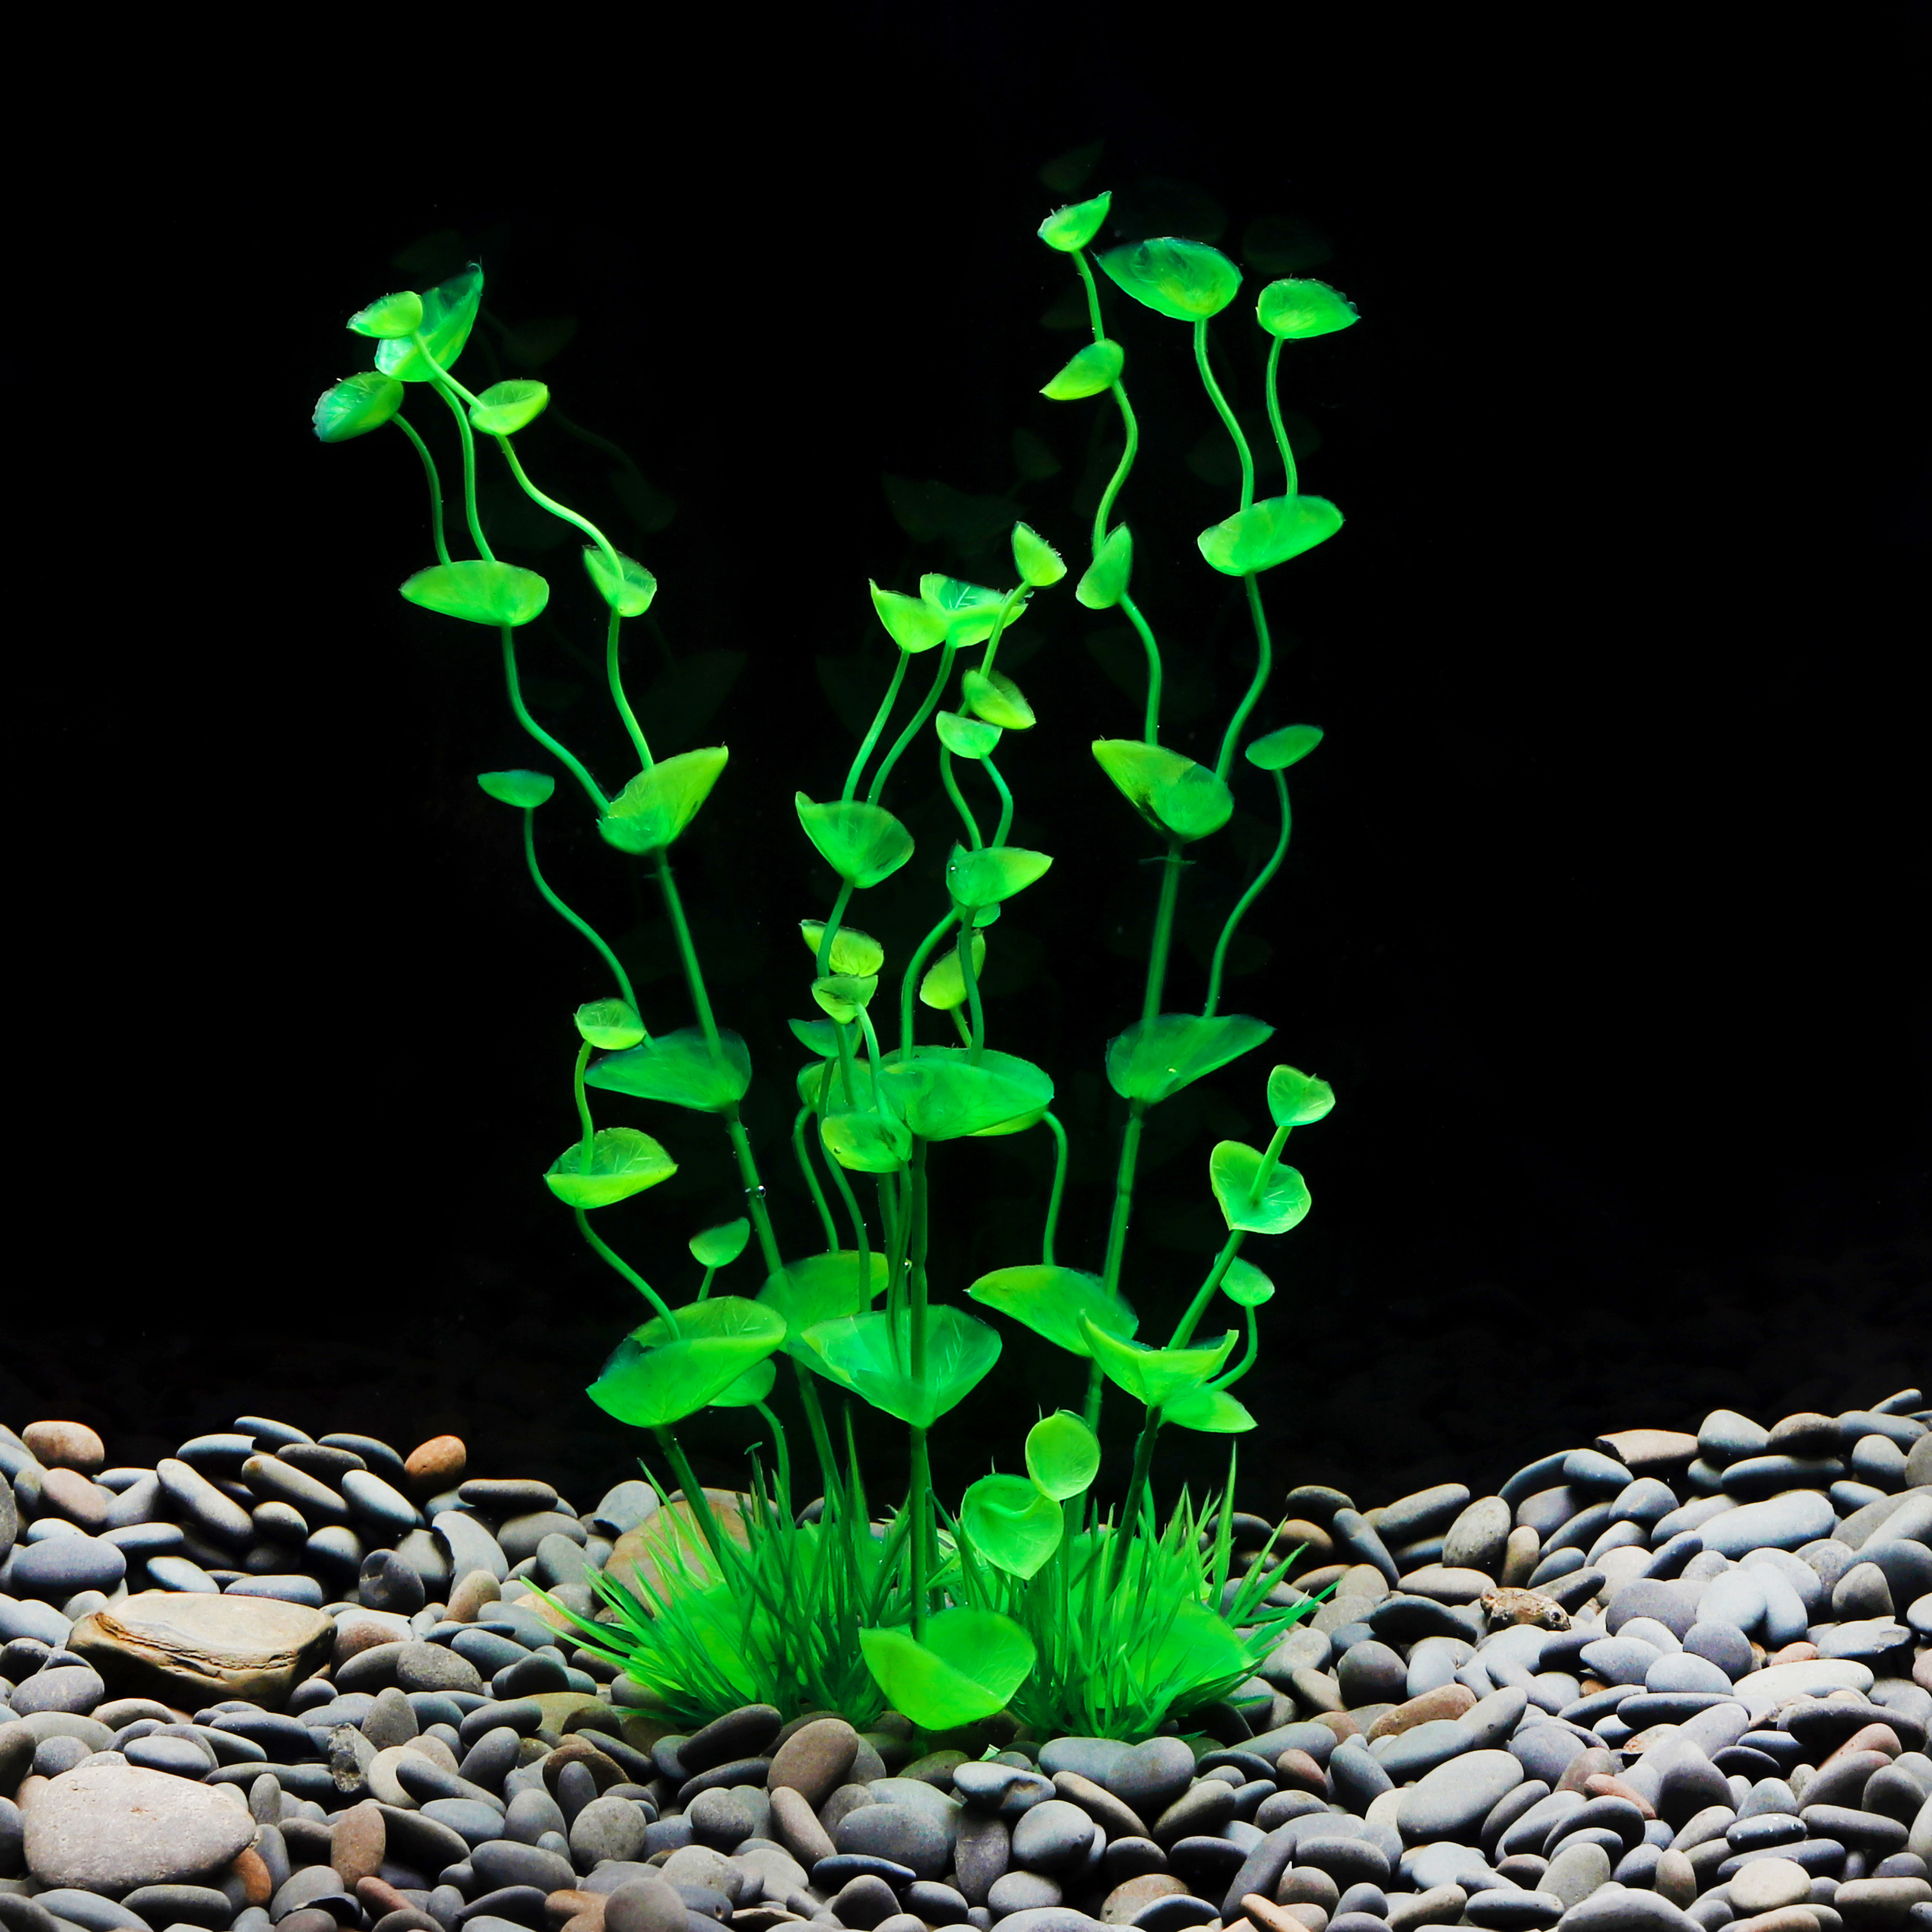 Artificial Plastic Aquarium Plant Non-Toxic Vibrant Aquarium Decoration Green Plant for All Fish Pet